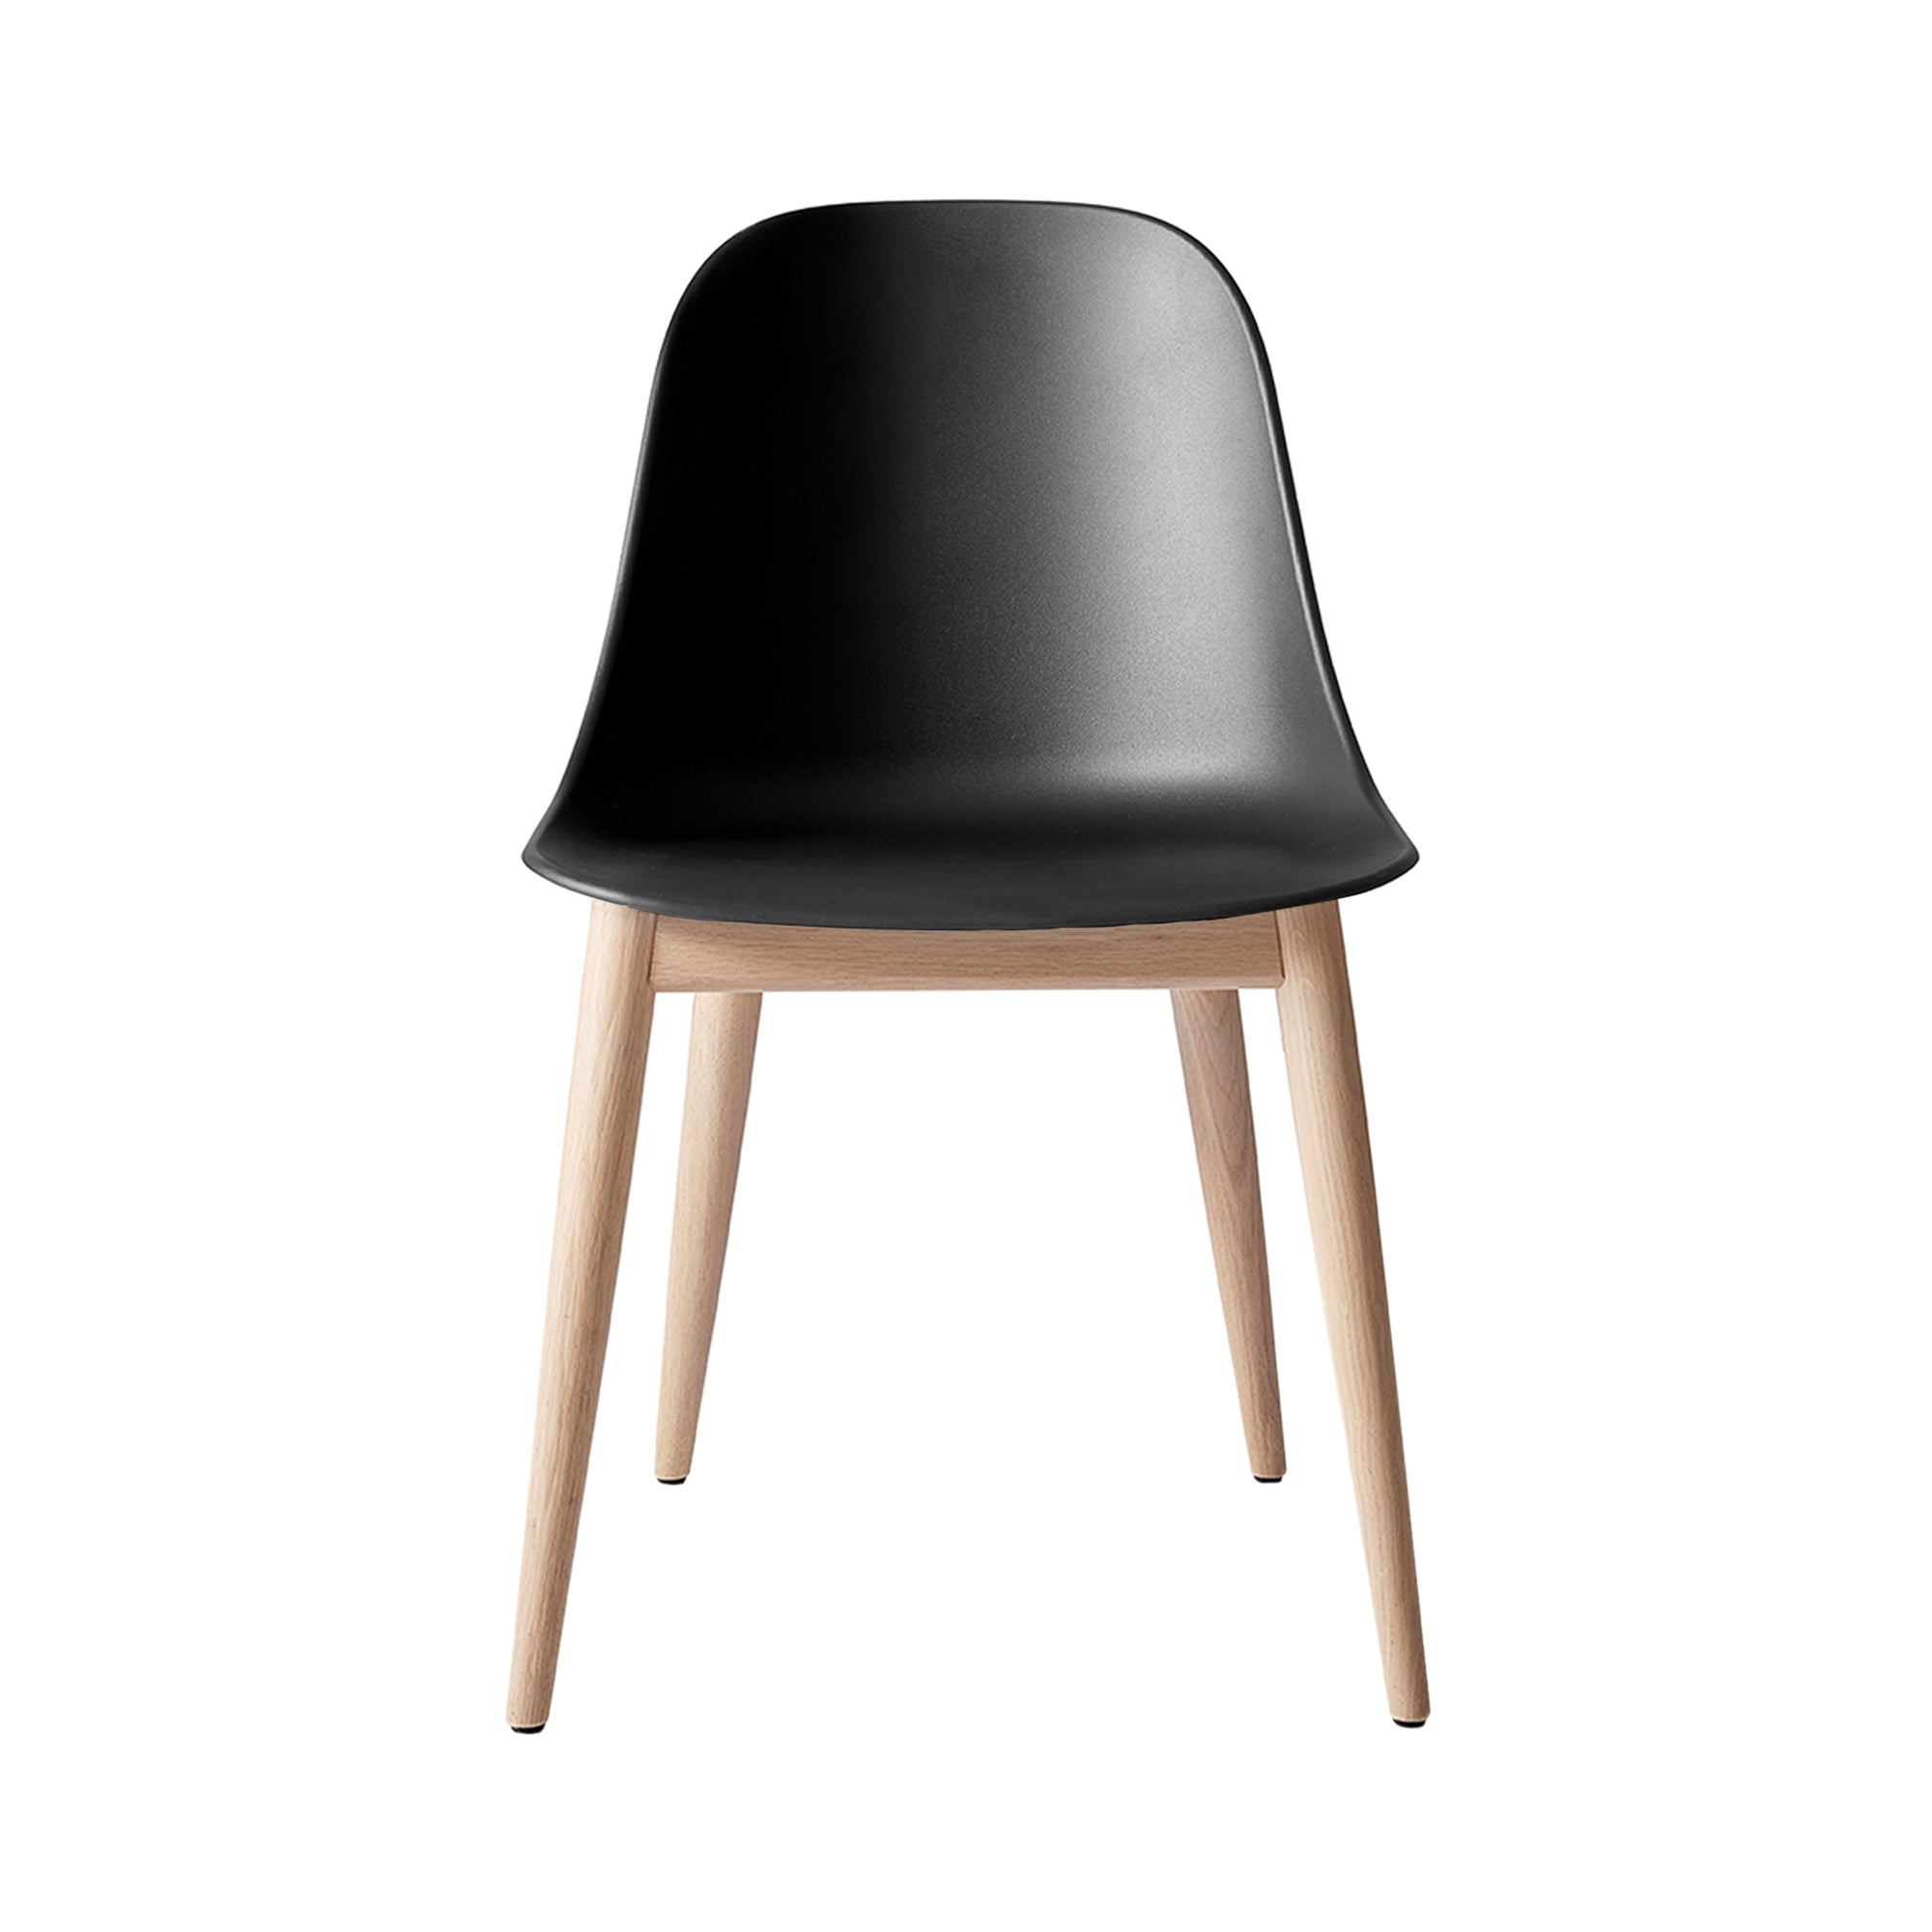 Harbour Side Chair: Wood Base + Natural Oak + Black